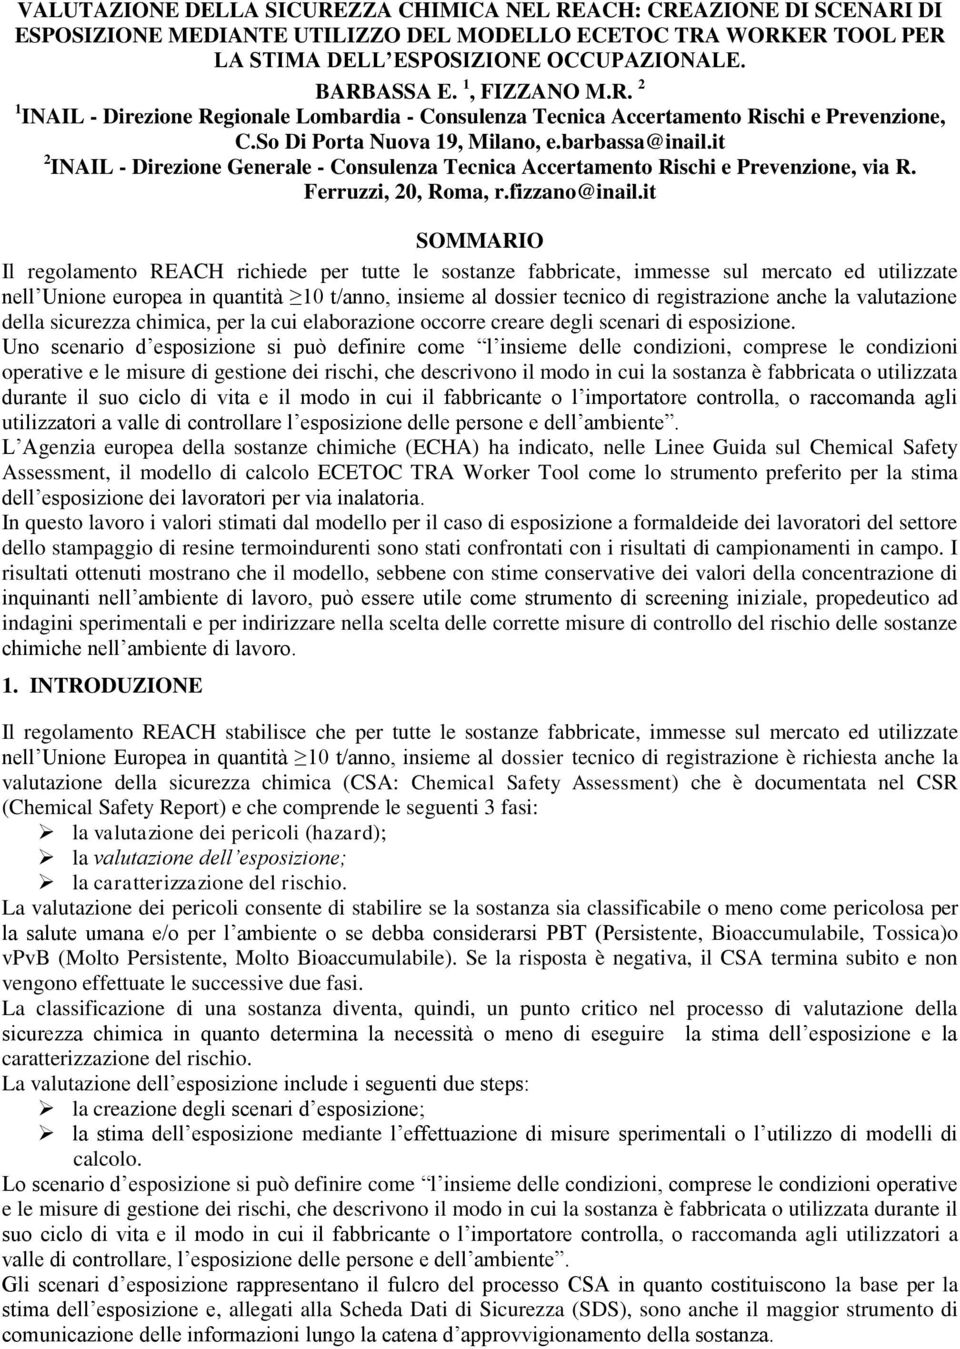 it 2 INAIL - Direzione Generale - Consulenza Tecnica Accertamento Rischi e Prevenzione, via R. Ferruzzi, 20, Roma, r.fizzano@inail.